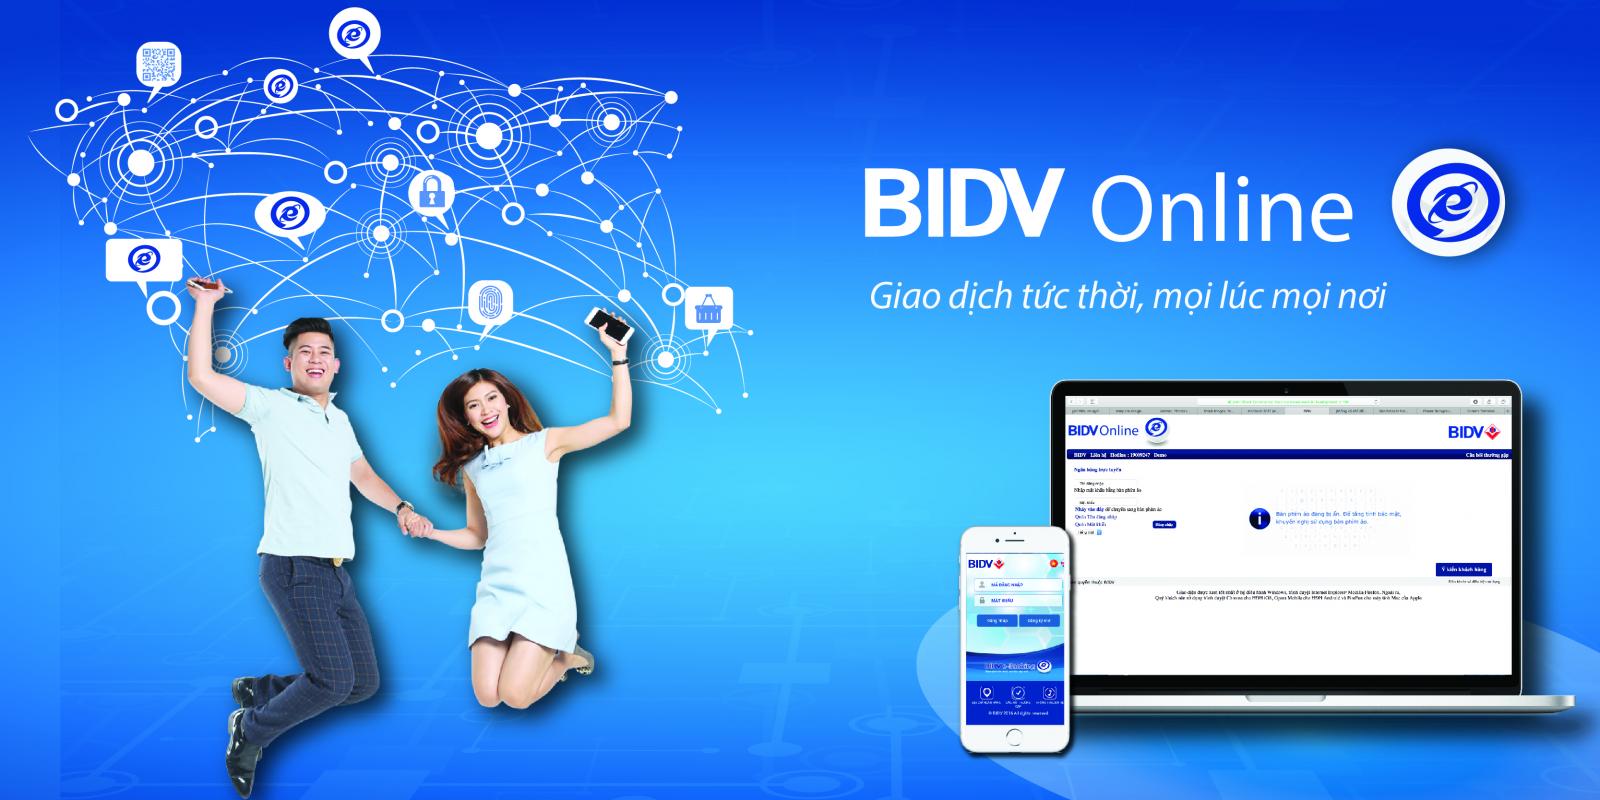 Cách đăng ký internet banking BIDV Online nhanh chóng tiện lợi nhất